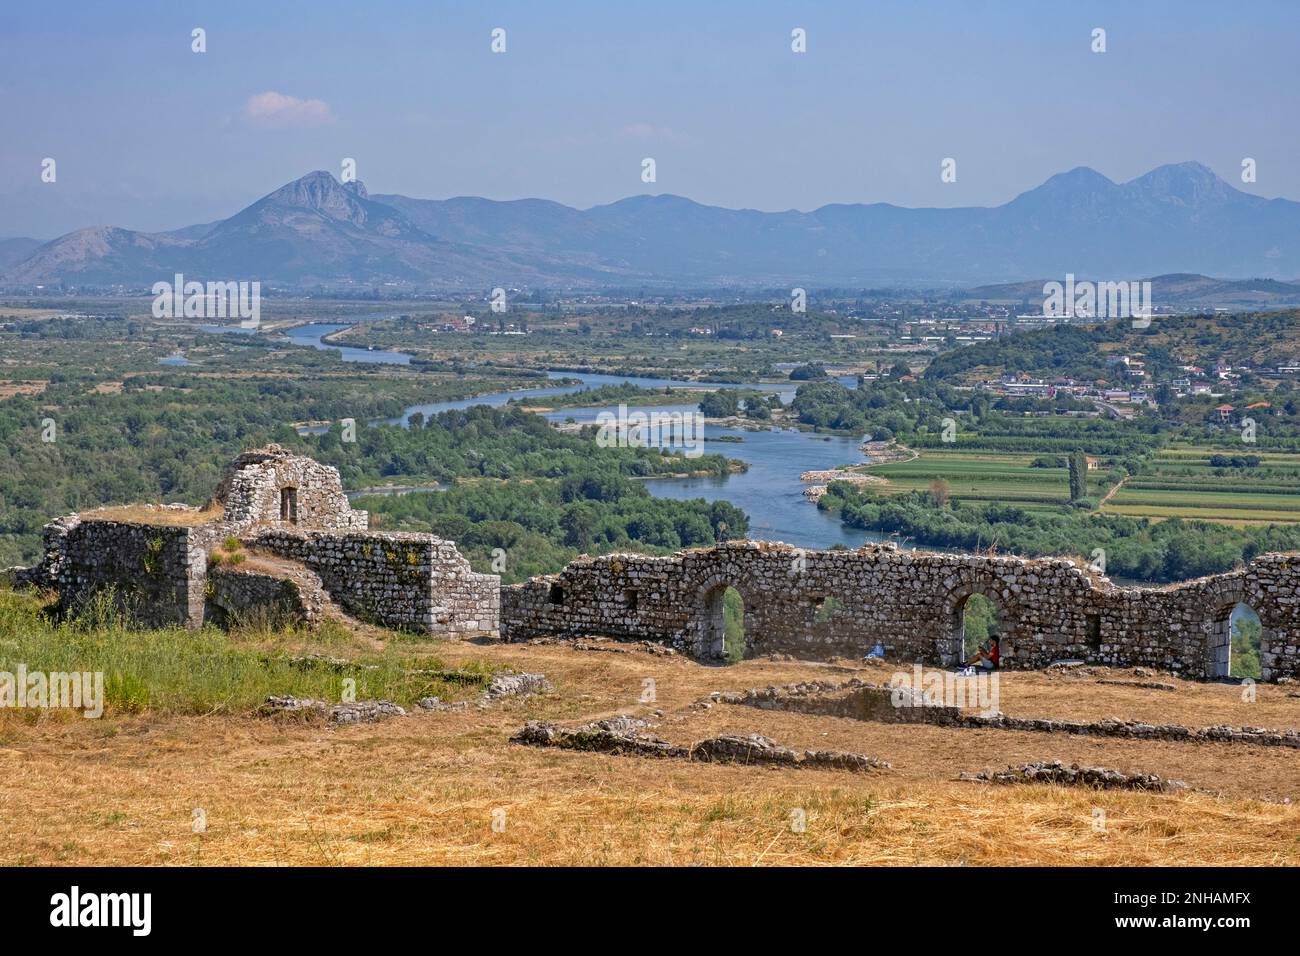 Vista sul delta del fiume Drin e sulle colline pedemontane delle Alpi albanesi, vista dal castello di Rozafa/Kalaja e Rozafës nell'Albania nord-occidentale Foto Stock